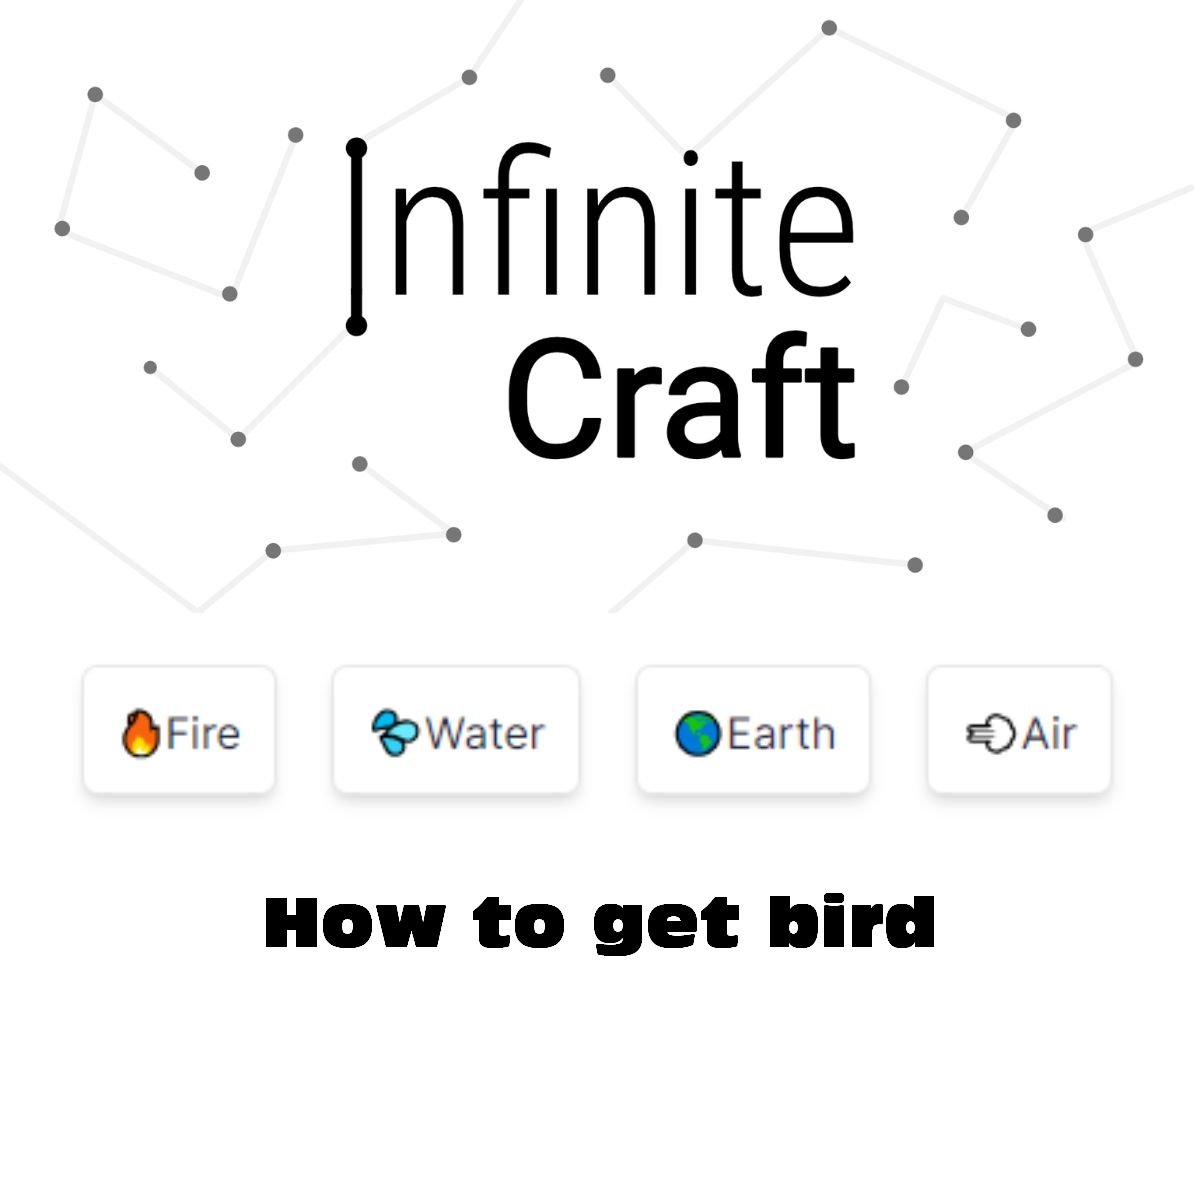 how to get bird in infinite craft